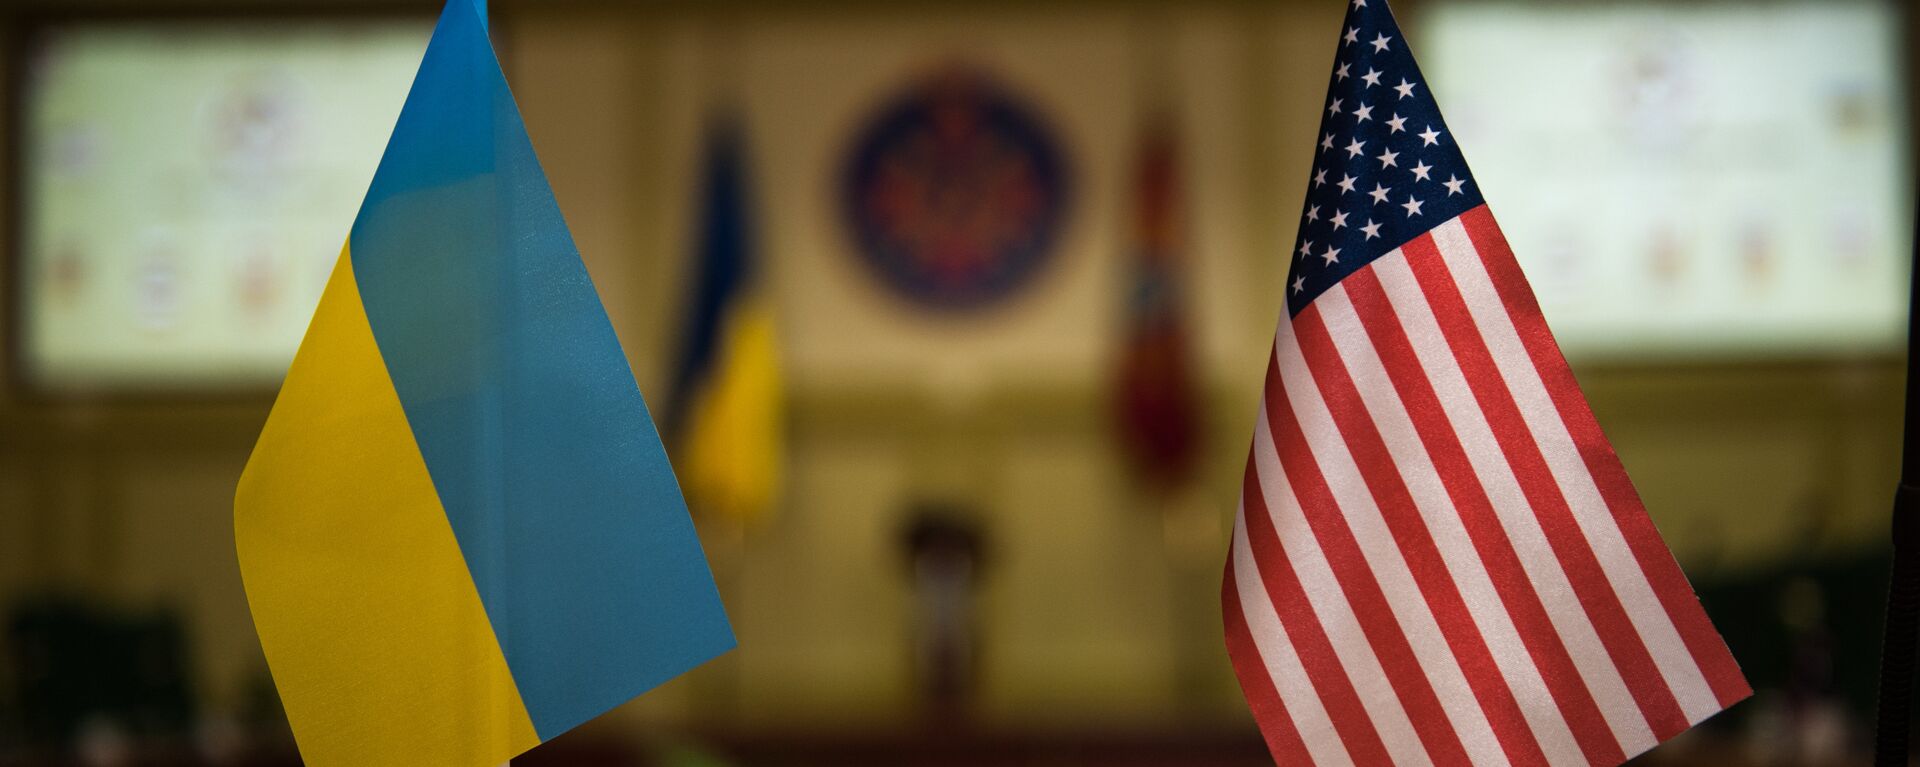 Banderas Ucrania y EEUU - Sputnik Mundo, 1920, 02.04.2021